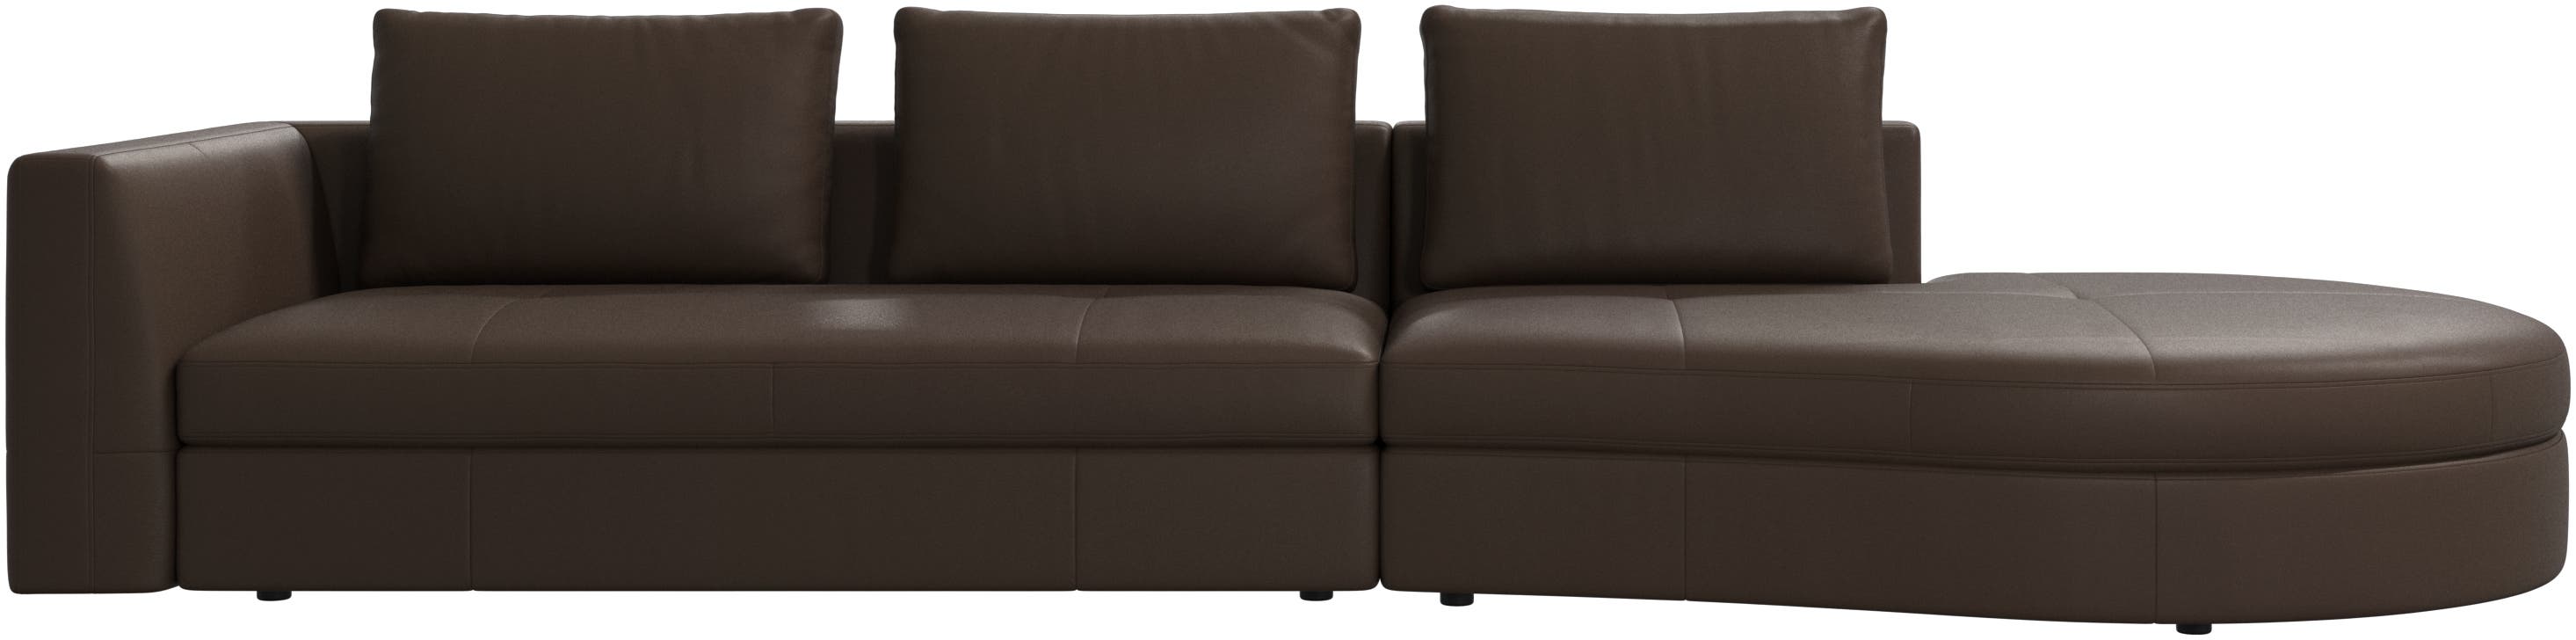 Bergamo sofa with round lounging unit,ライト